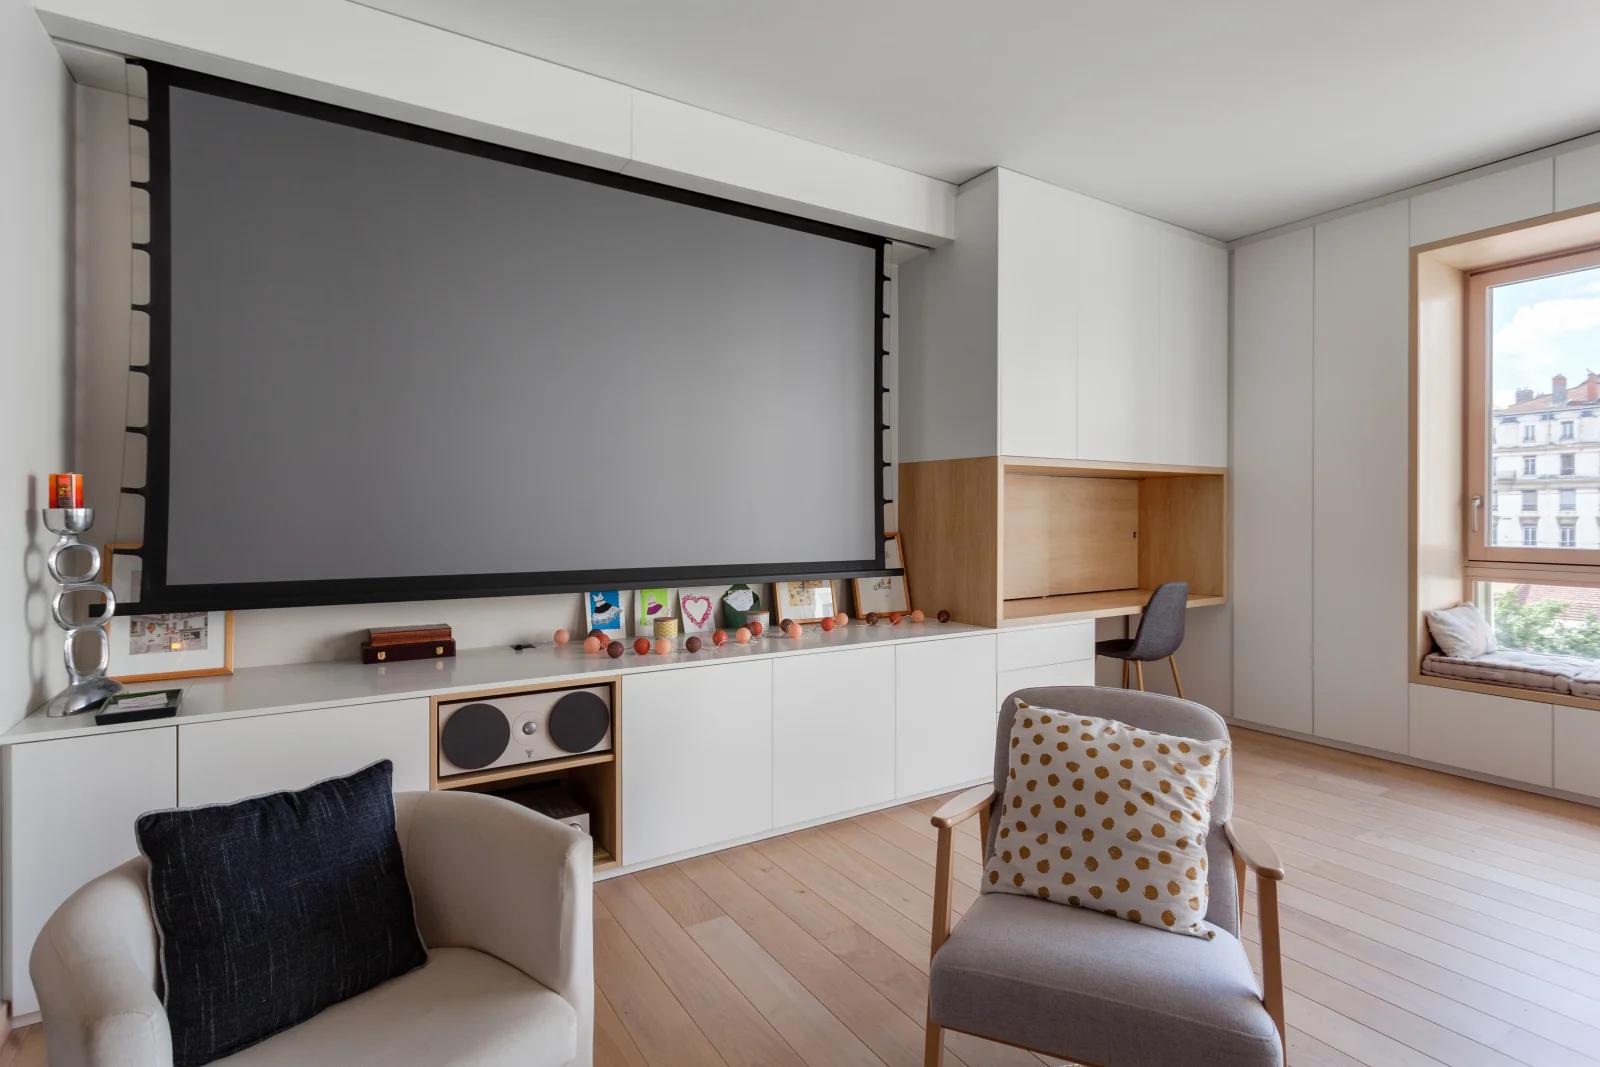 Living room in Appart. design bay window video-proj terrace - 3